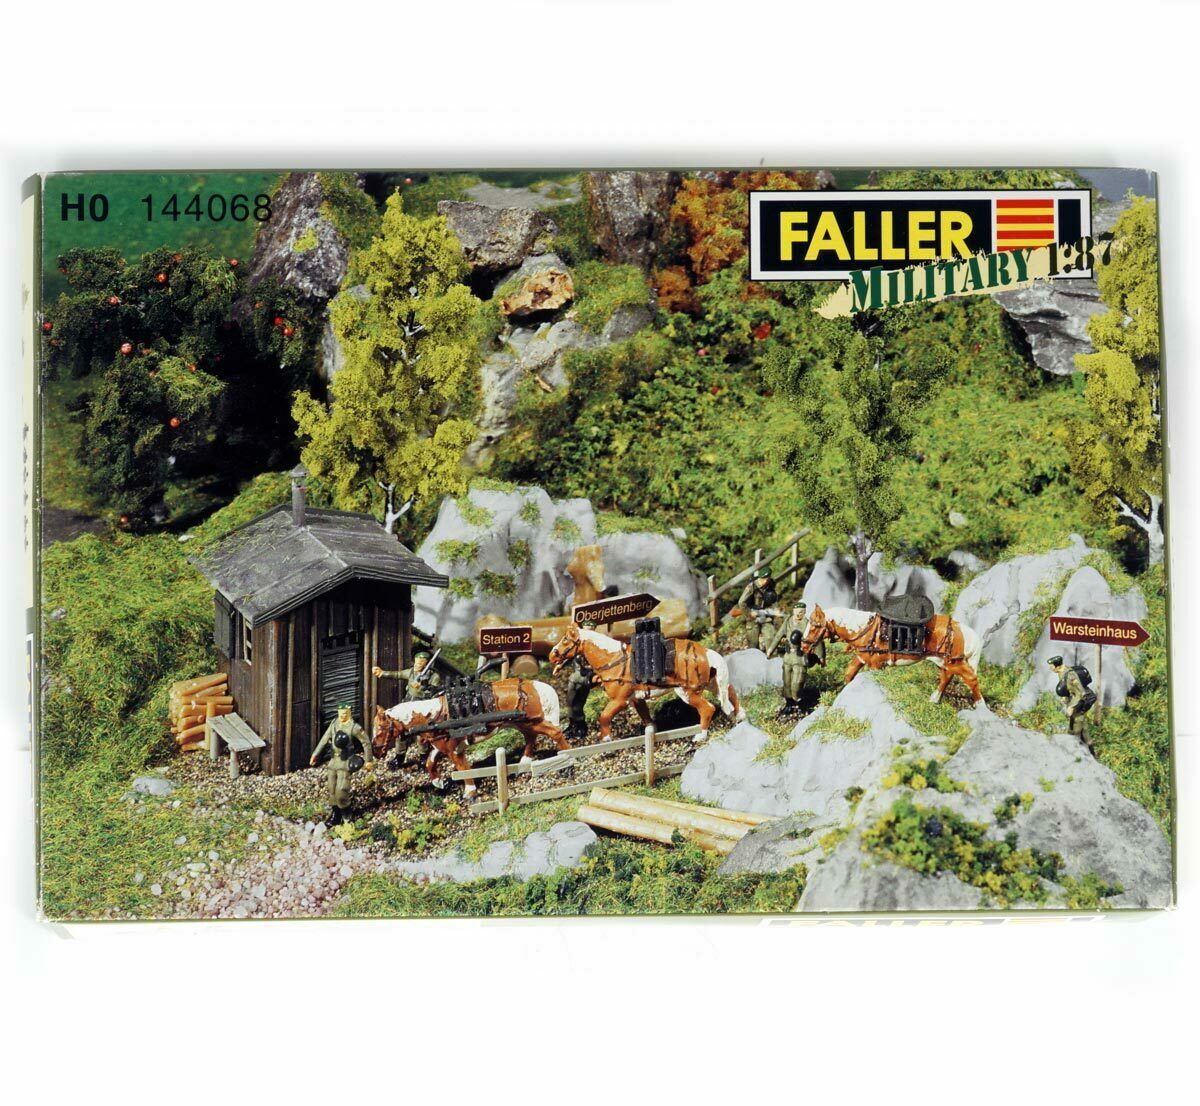 Faller 144068 HO Military Mountain Infantry Model Kit